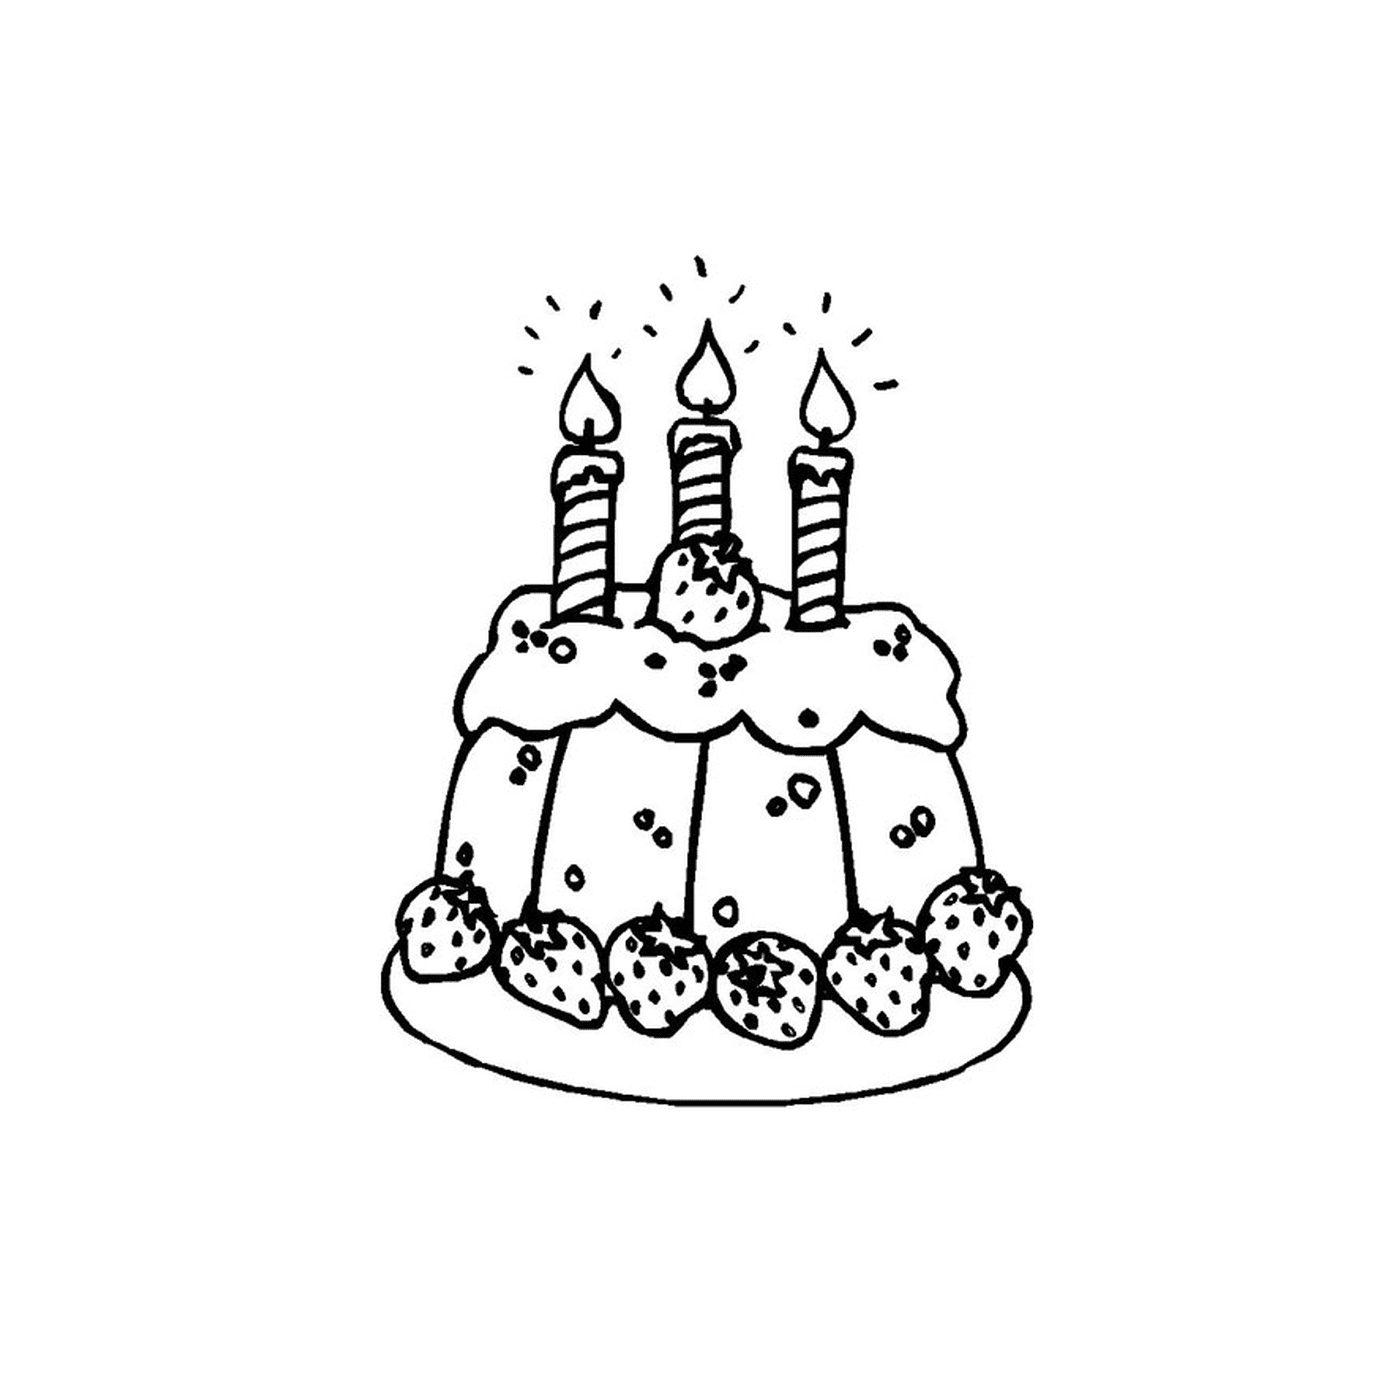  um bolo com três velas acesas 